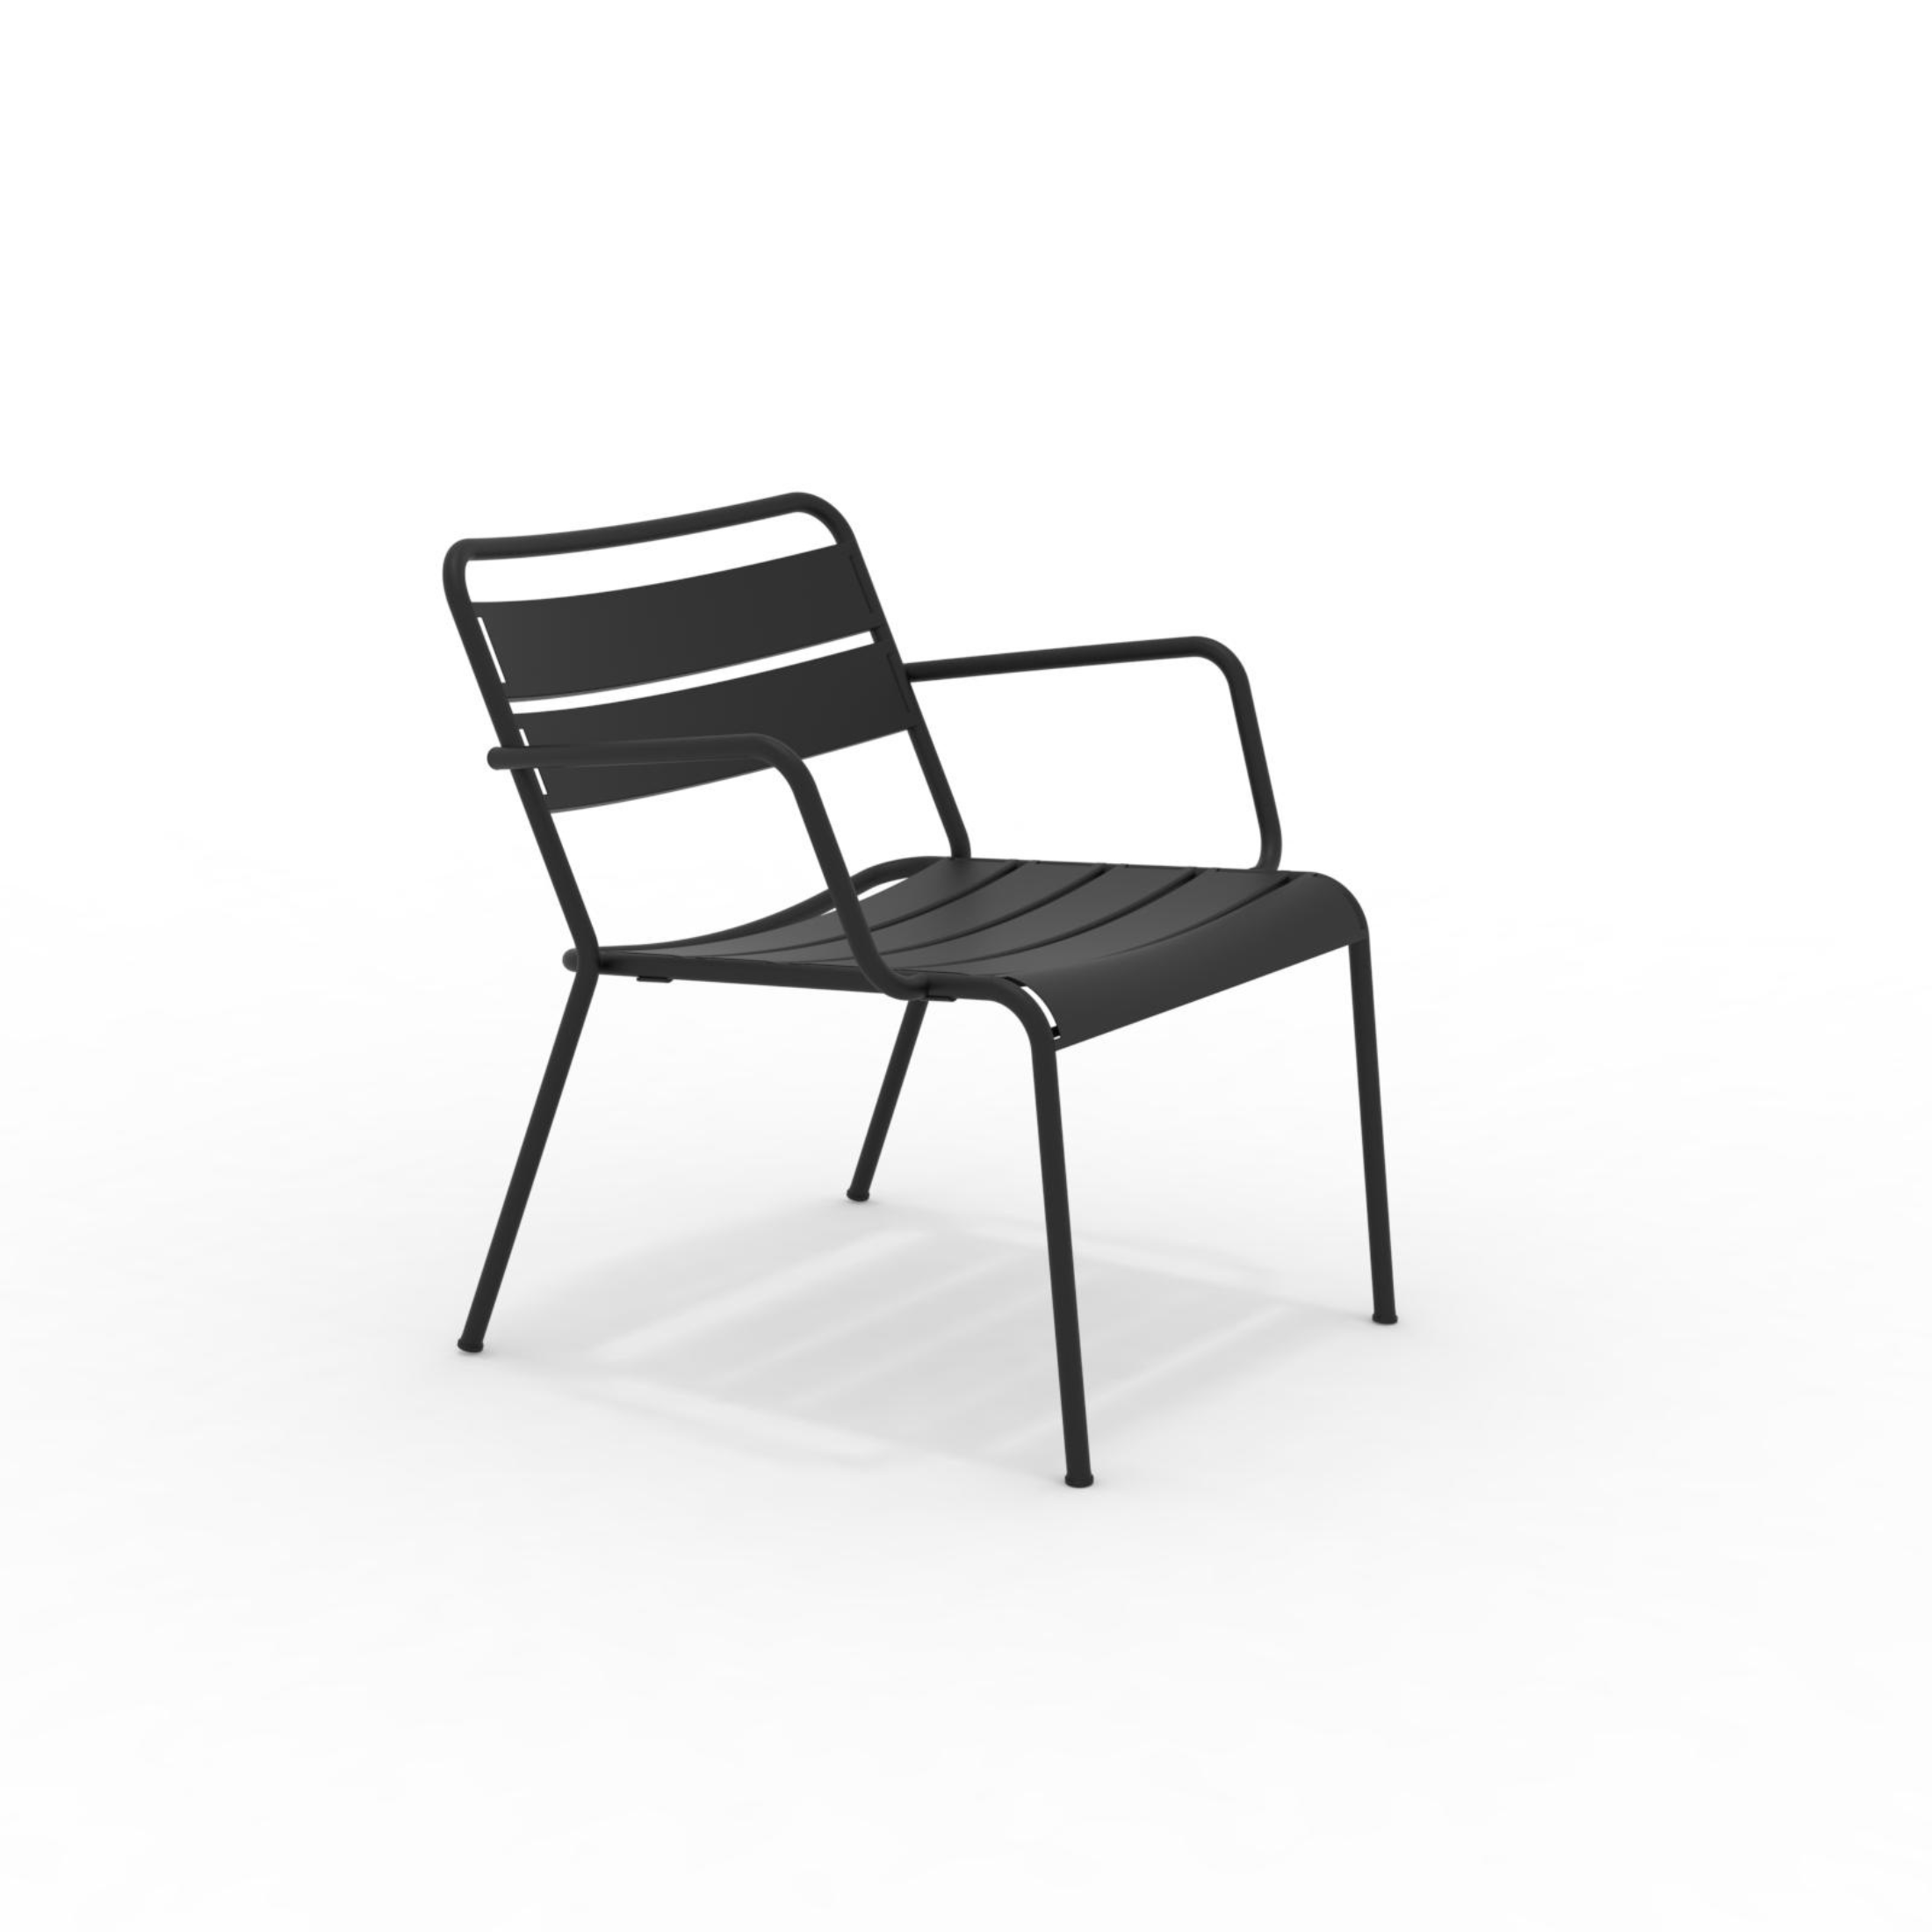 Poltrona bassa in metallo verniciato "Twist" sedia lounge da giardino cm 69x70 72h